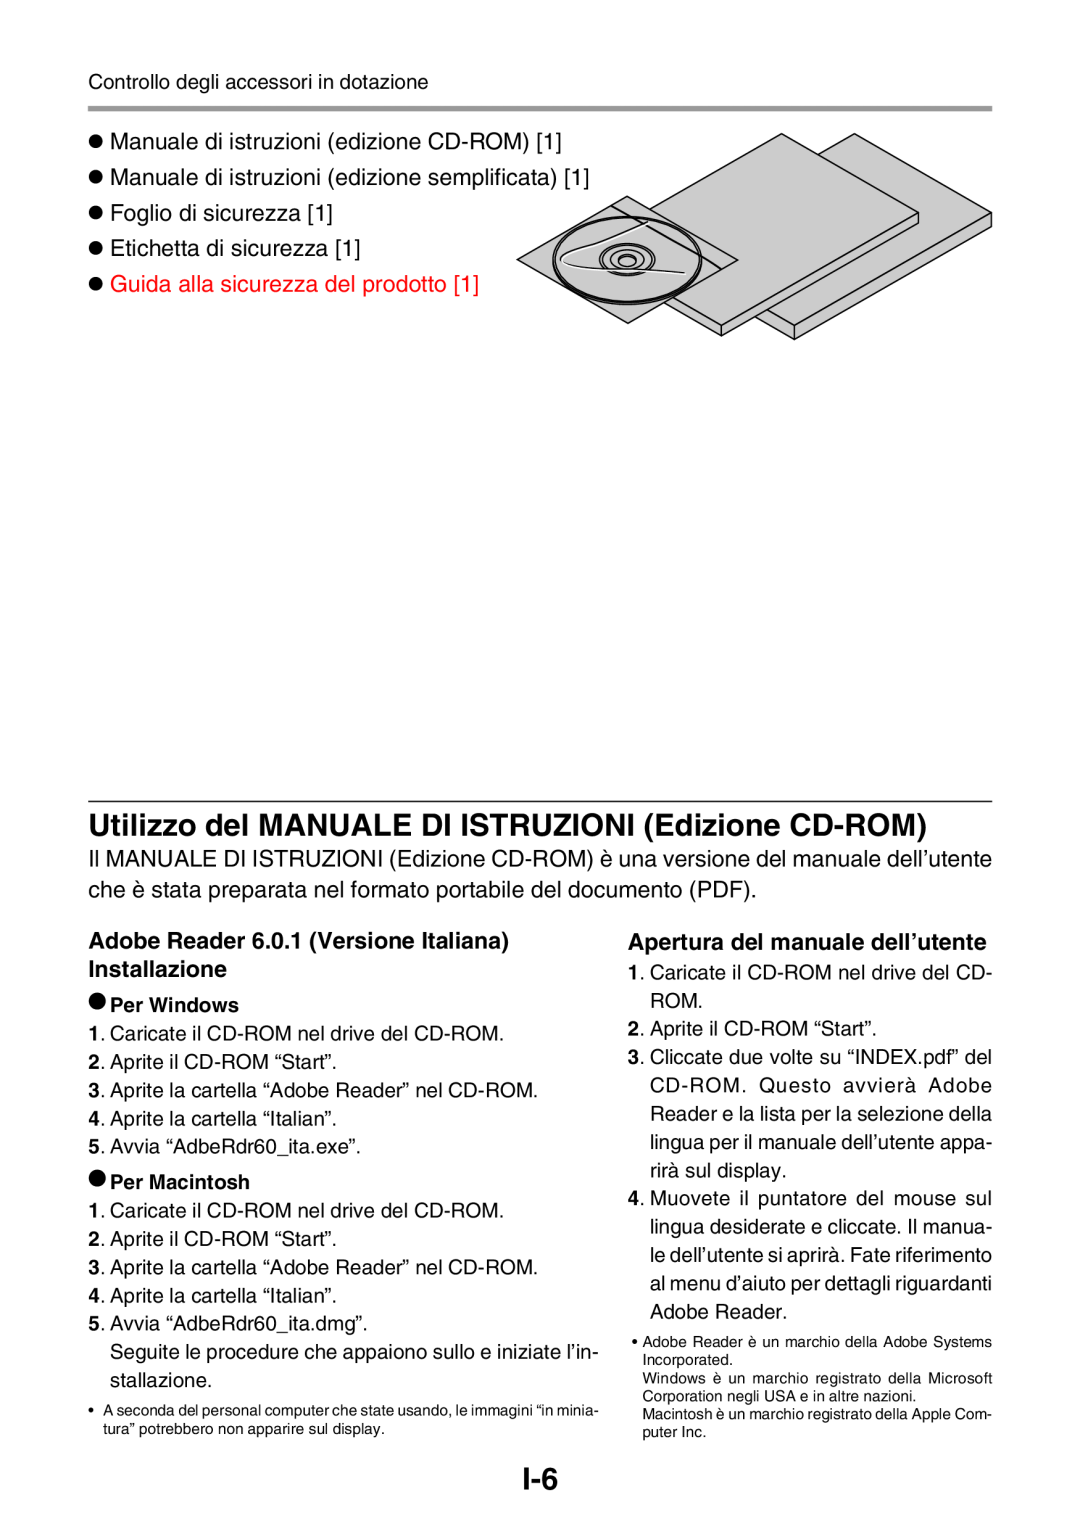 3M PX5 Utilizzo del MANUALE DI ISTRUZIONI Edizione CD-ROM, Manuale di istruzioni edizione CD-ROM, Etichetta di sicurezza 